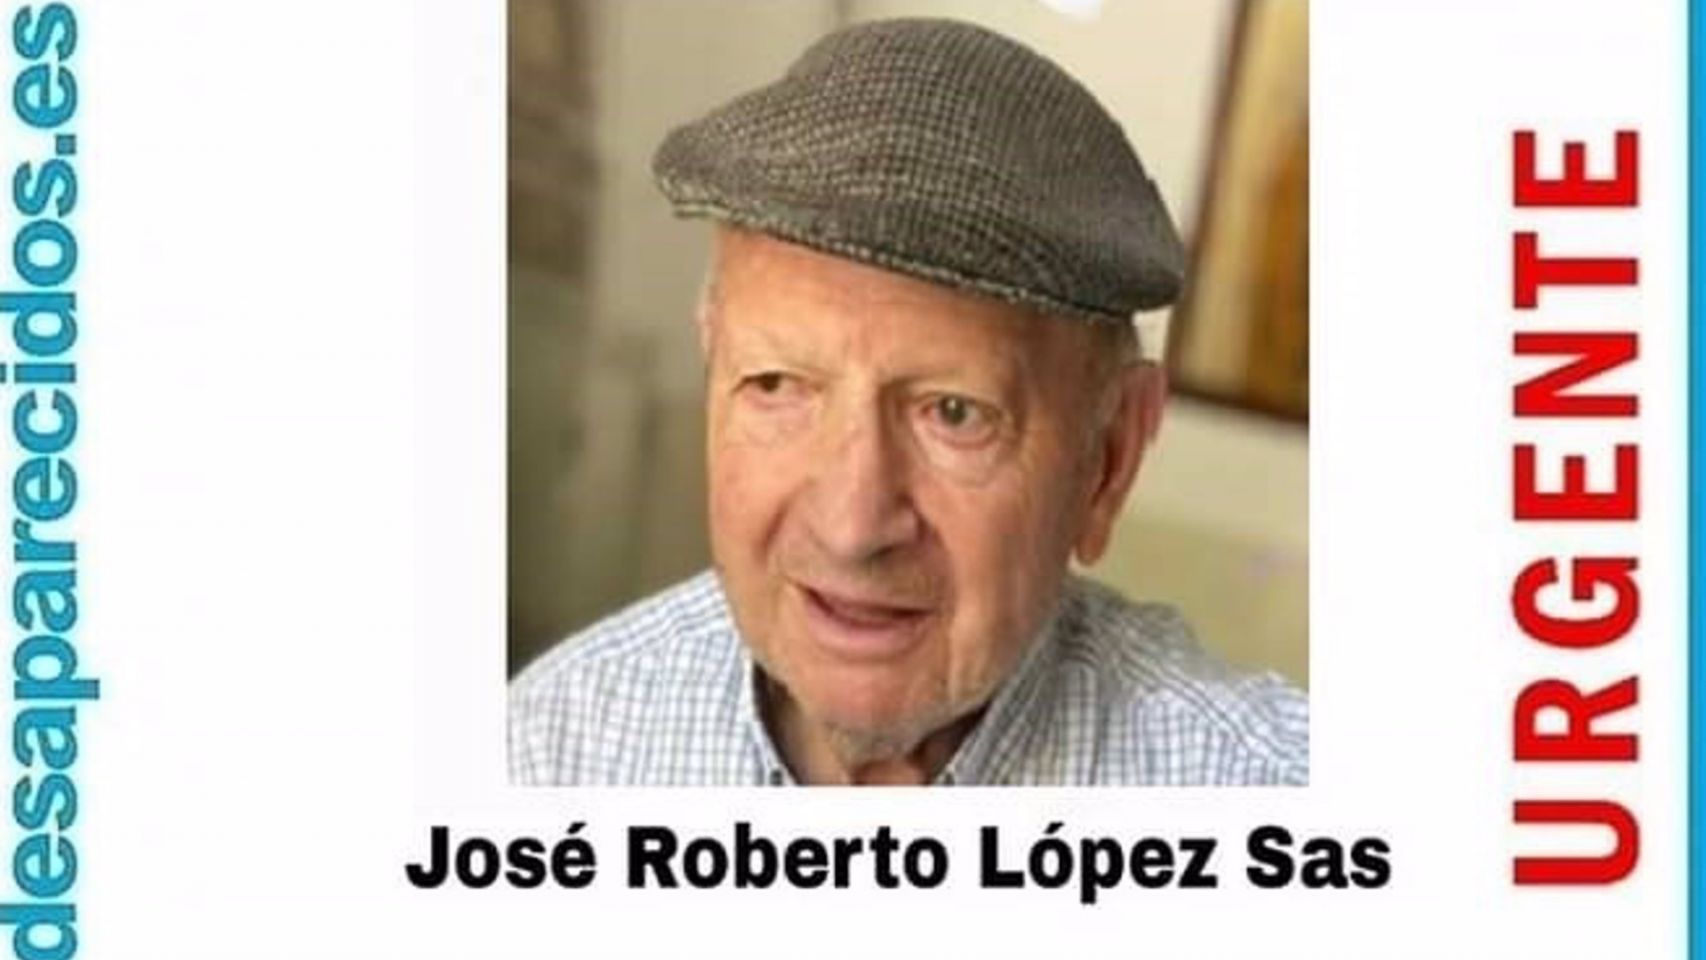  José Roberto López Sas, desaparecido el pasado 1 de diciembre en Ourense.